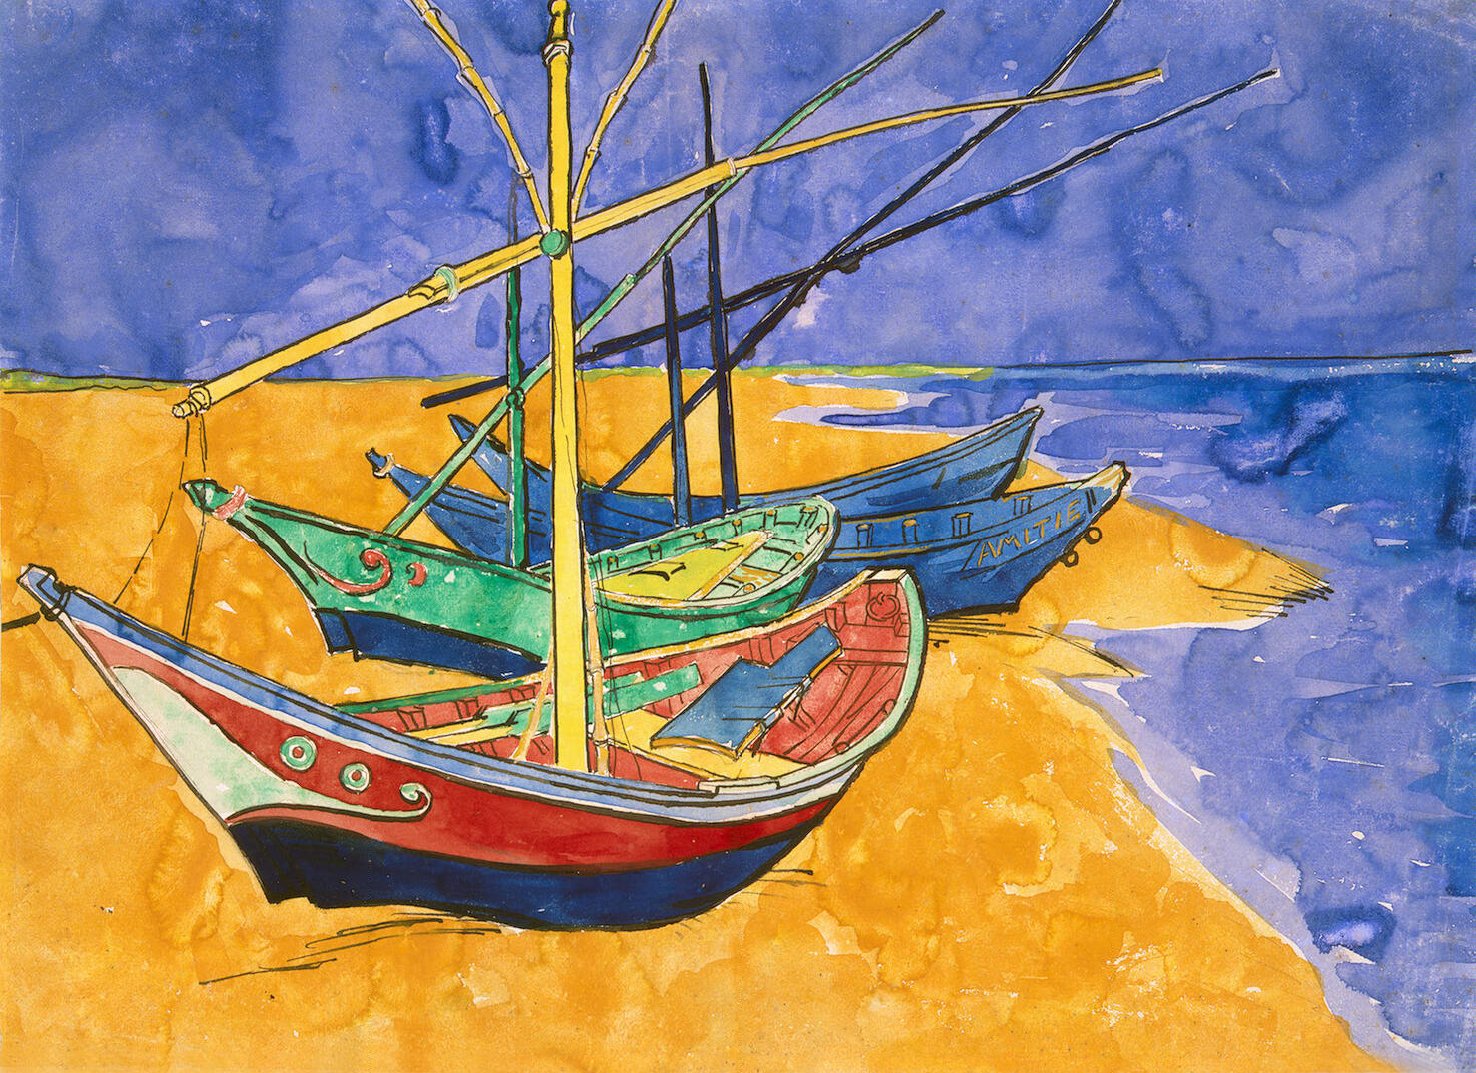 Aquarellista!: Watercolour of Vincent van Gogh